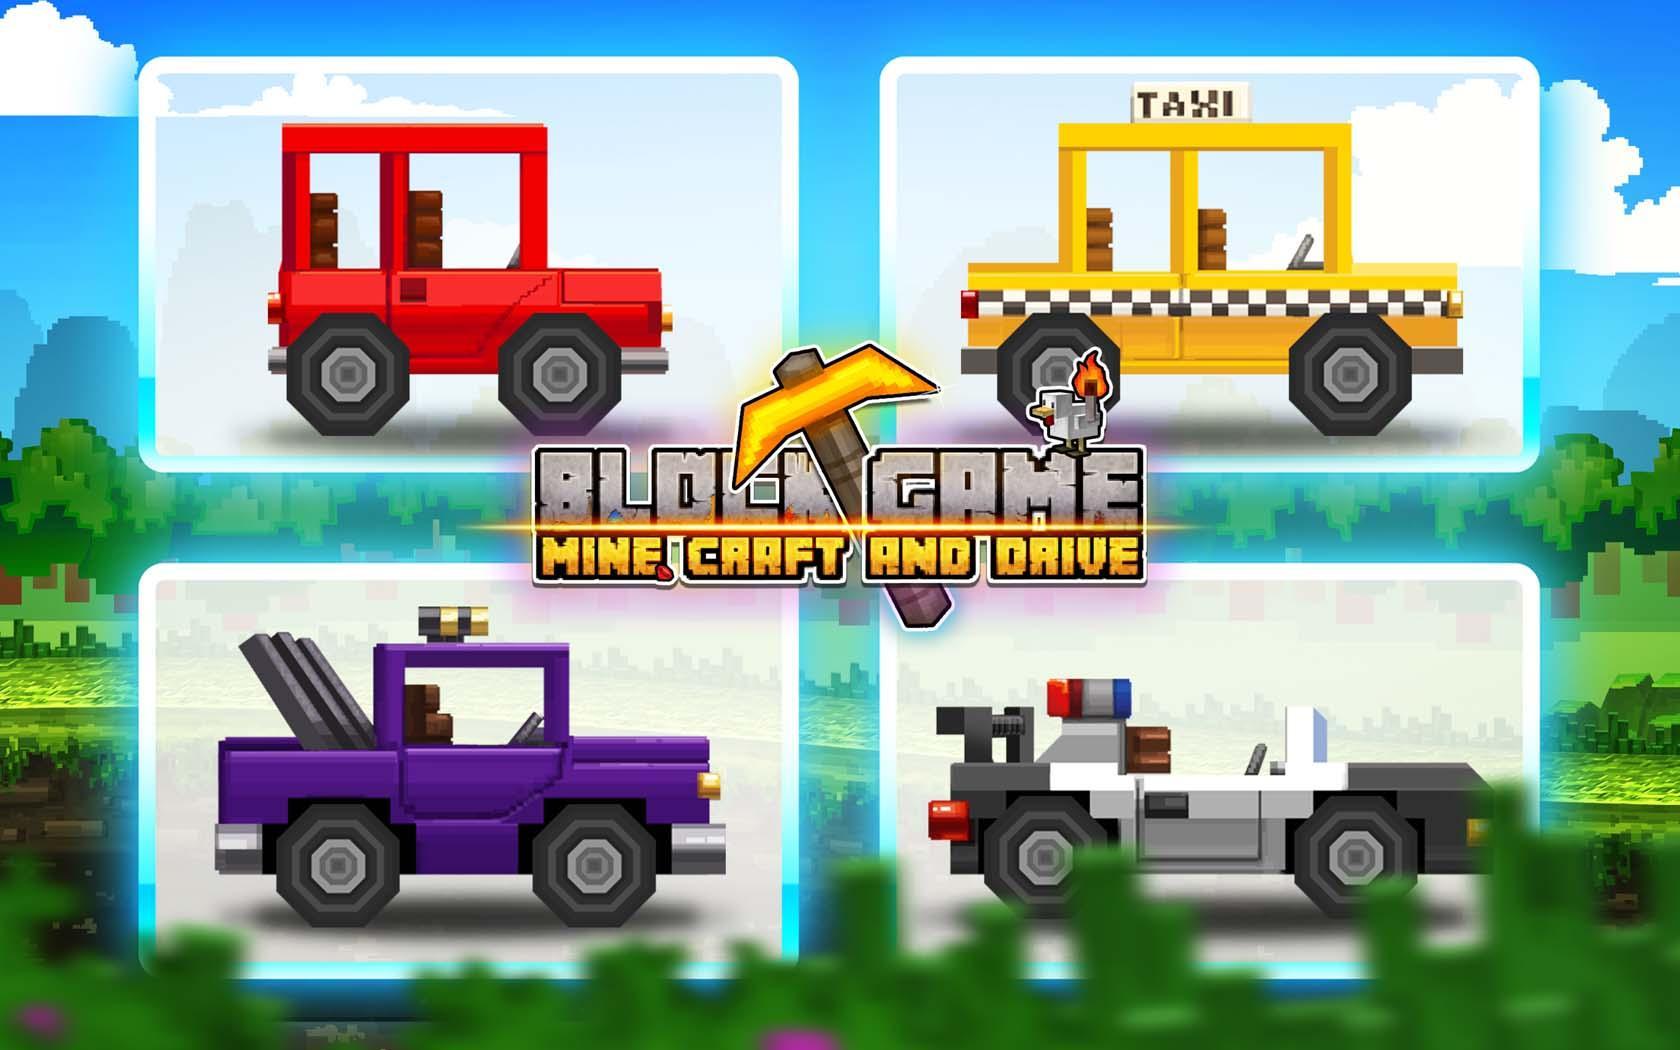 Screenshot 1 of เกมบล็อก: ทุ่นระเบิด ประดิษฐ์และขับรถ 3.62